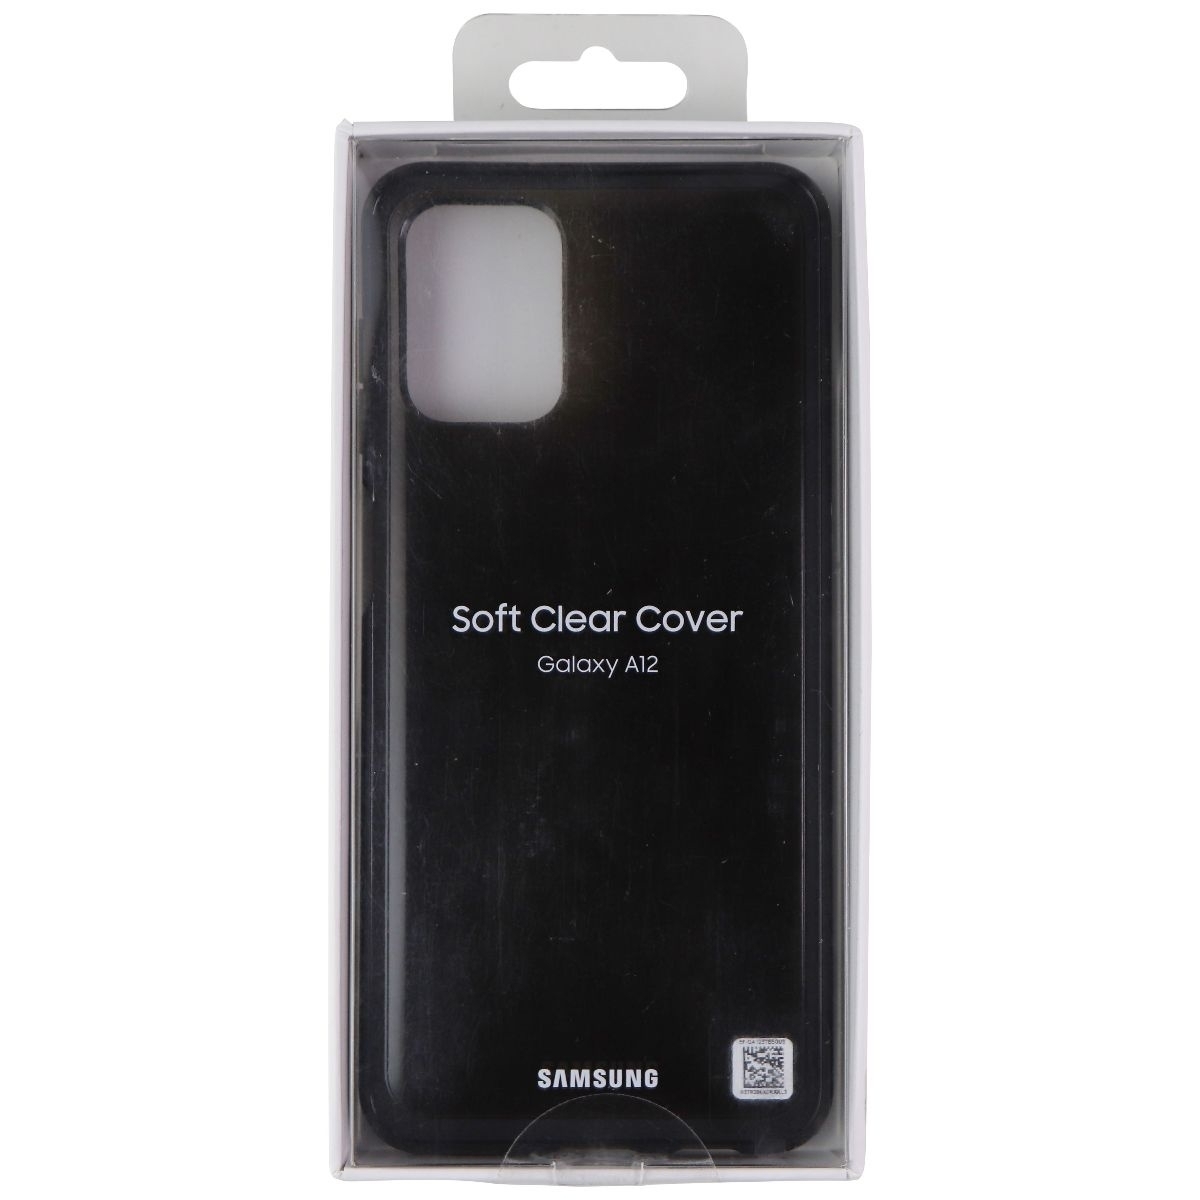 Samsung Soft Clear Cover For Galaxy A12 Smartphones - Black (EF-QA125TBEVZW)